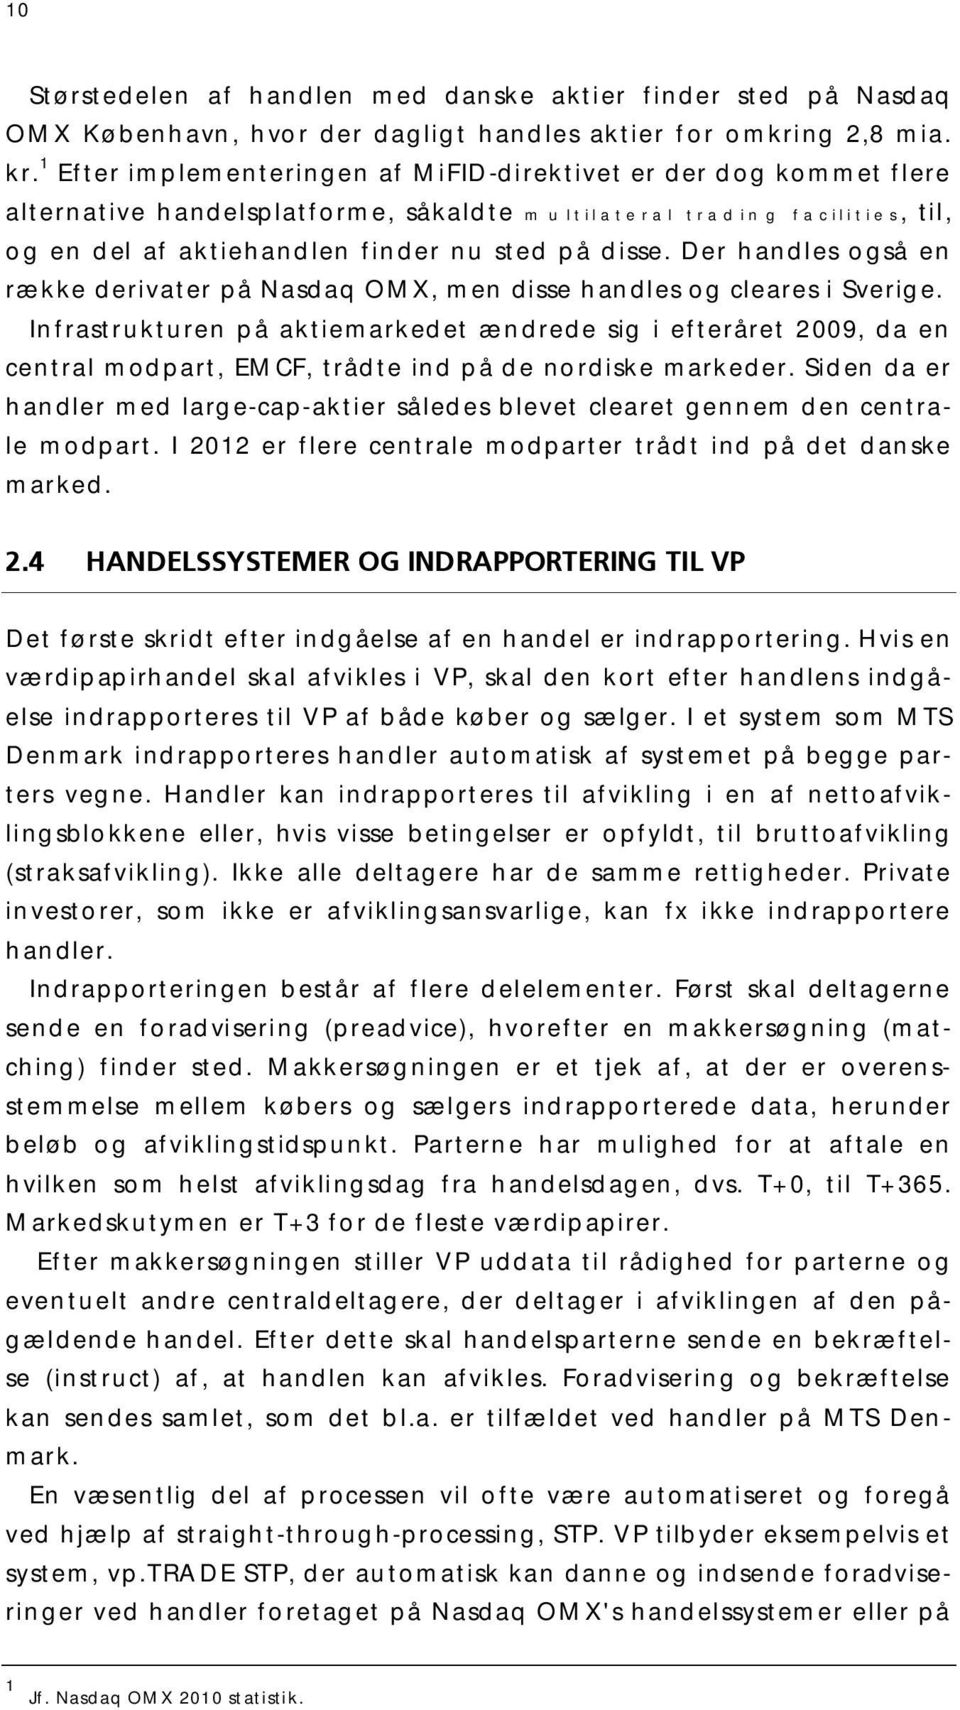 Der handles også en række derivater på Nasdaq OMX, men disse handles og cleares i Sverige.